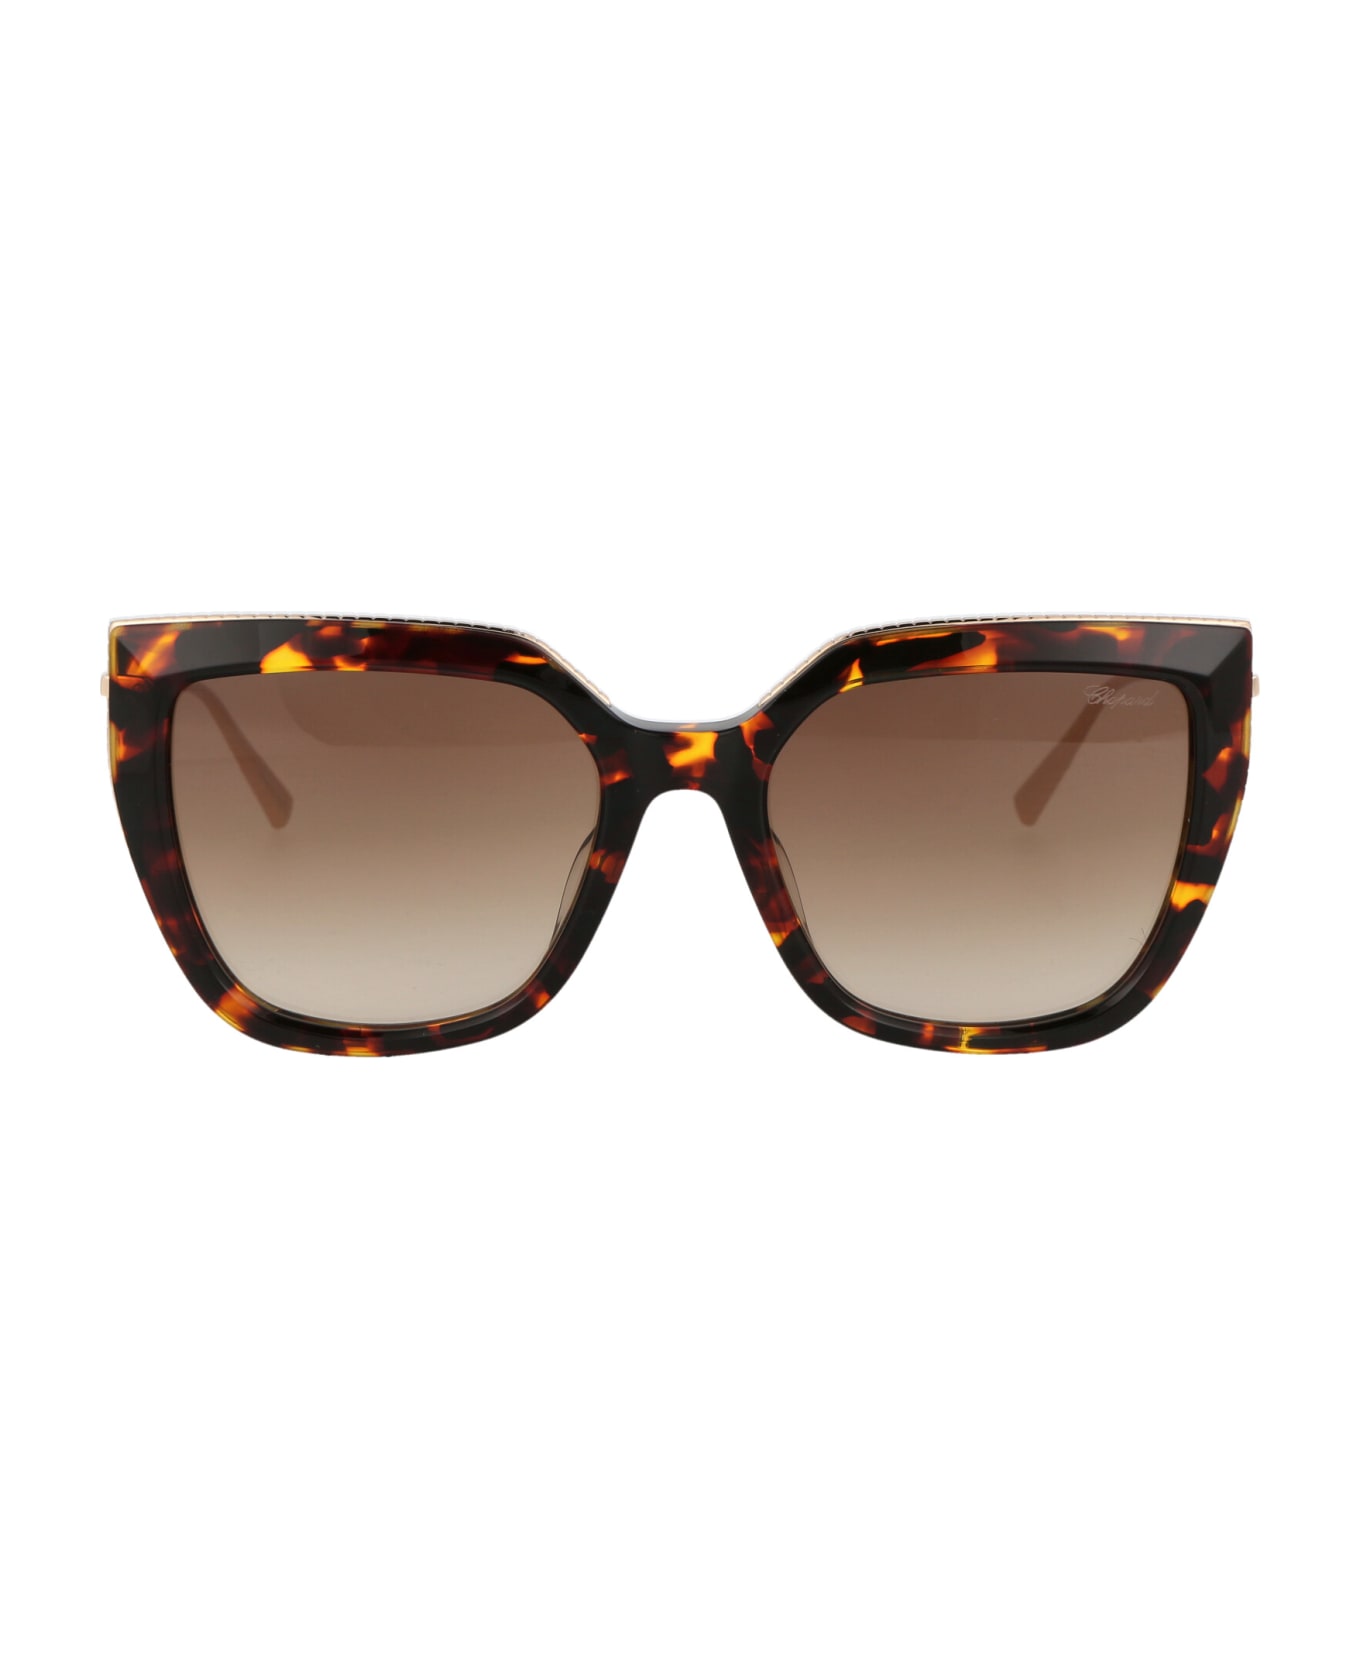 Chopard Sch319m Sunglasses - 0745 BROWN